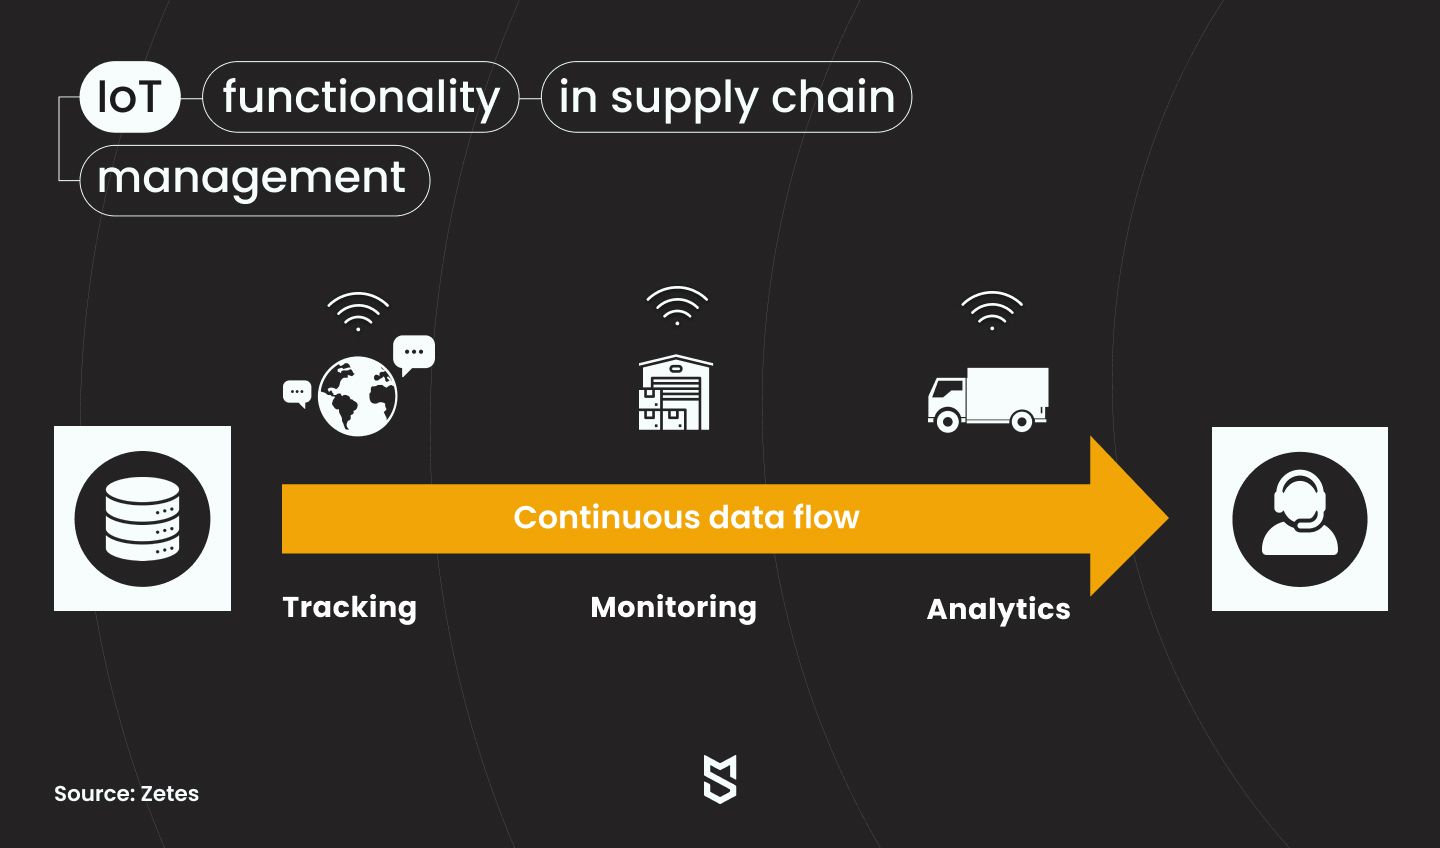 Funkcjonalność IoT w zarządzaniu łańcuchem dostaw